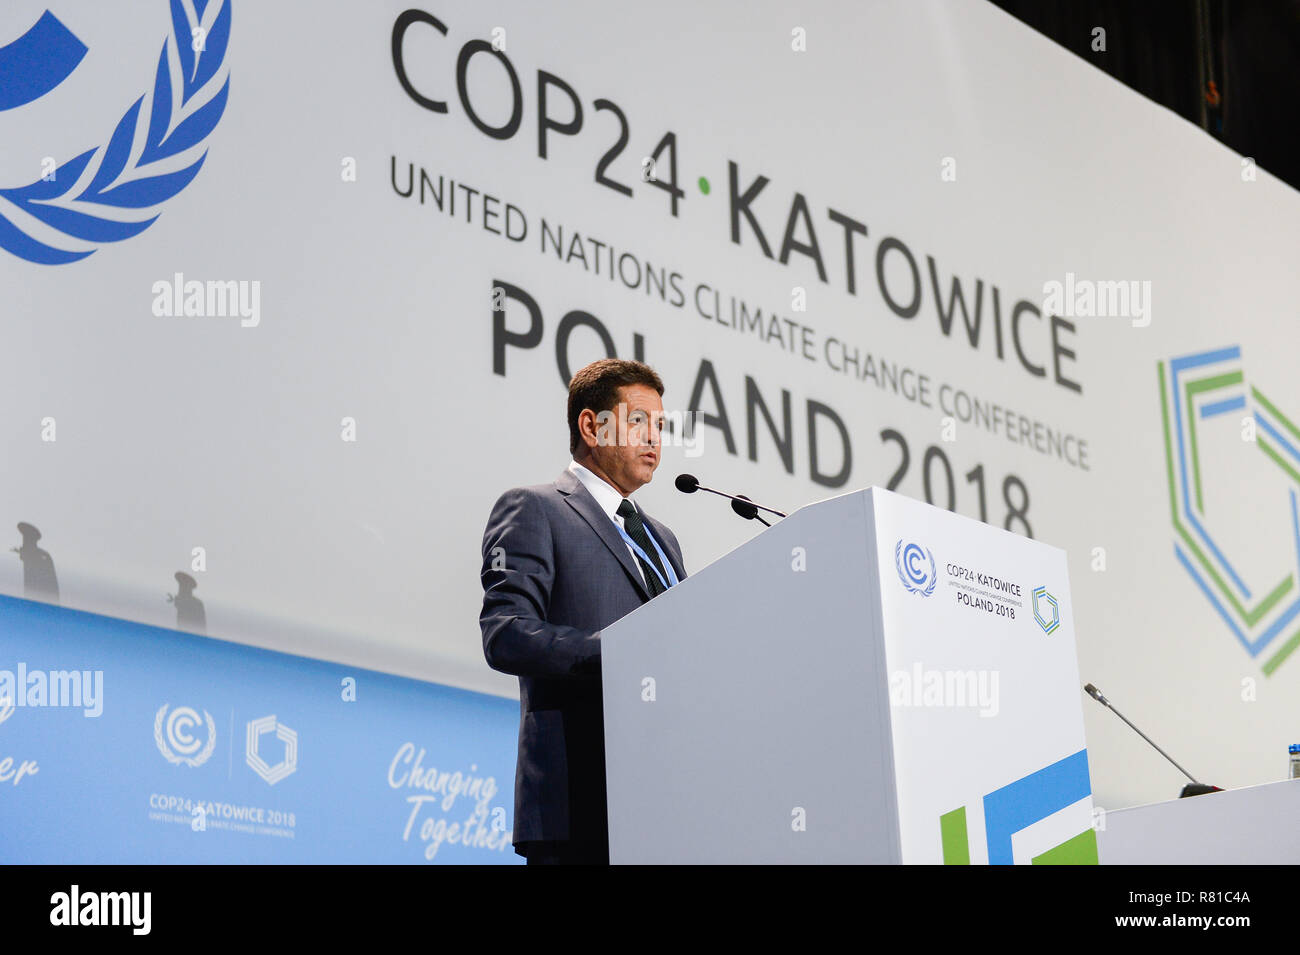 Edson Goncalves di Duarte, Ministro dell'ambiente del Brasile visto parlare durante la seconda parte del segmento ad alto livello al COP24 Conferenza ONU sui Cambiamenti Climatici 2018. Foto Stock